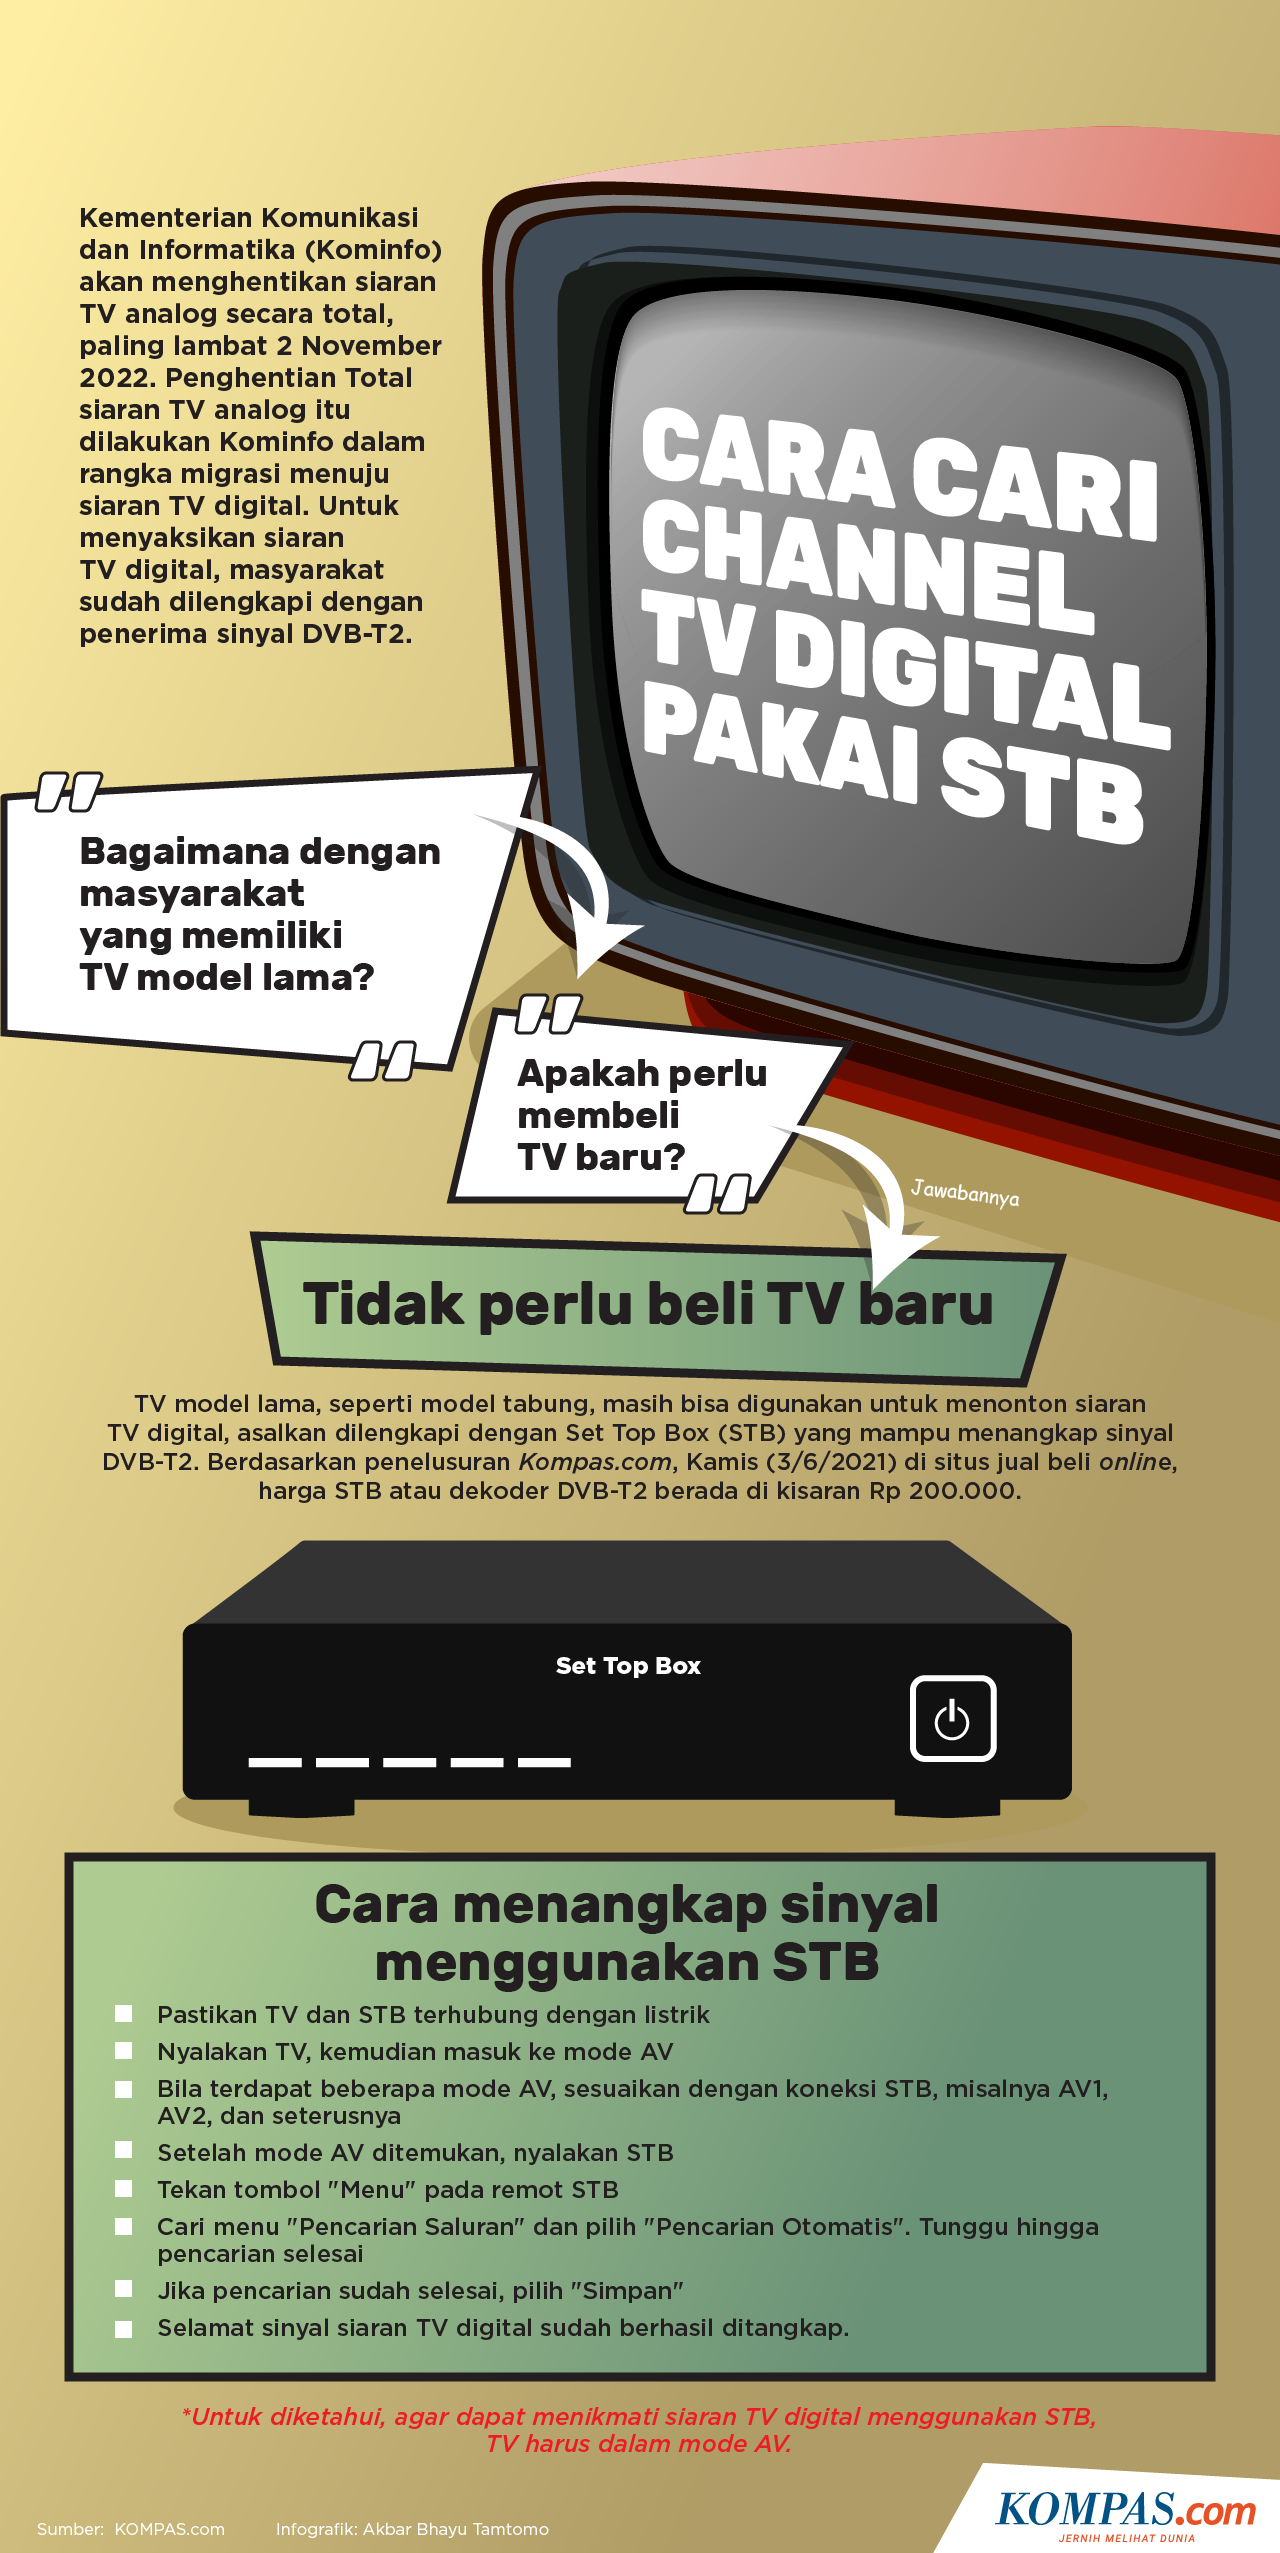 Cara mendapatkan siaran tv digital gratis